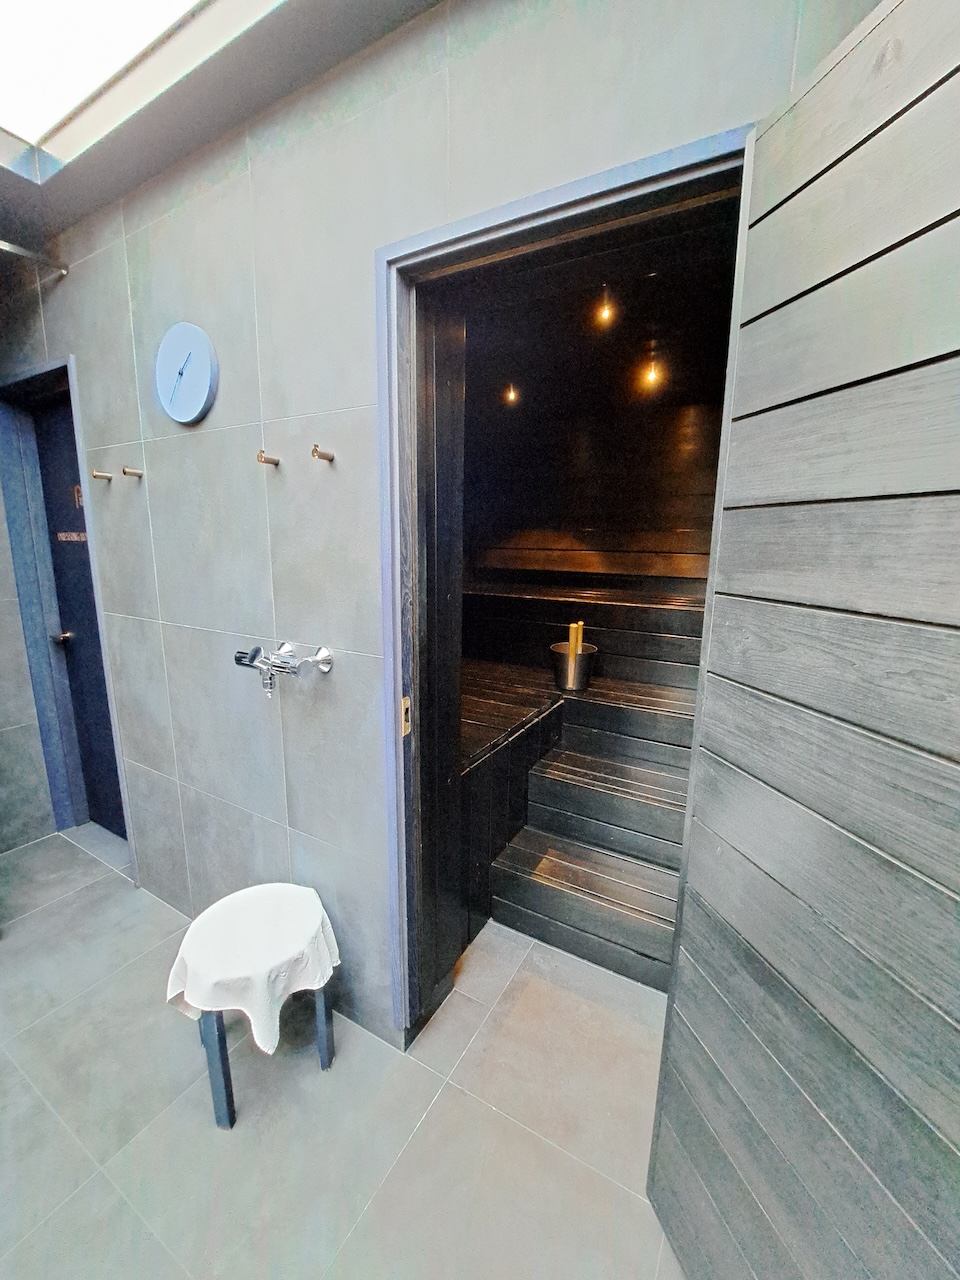 sauna room door